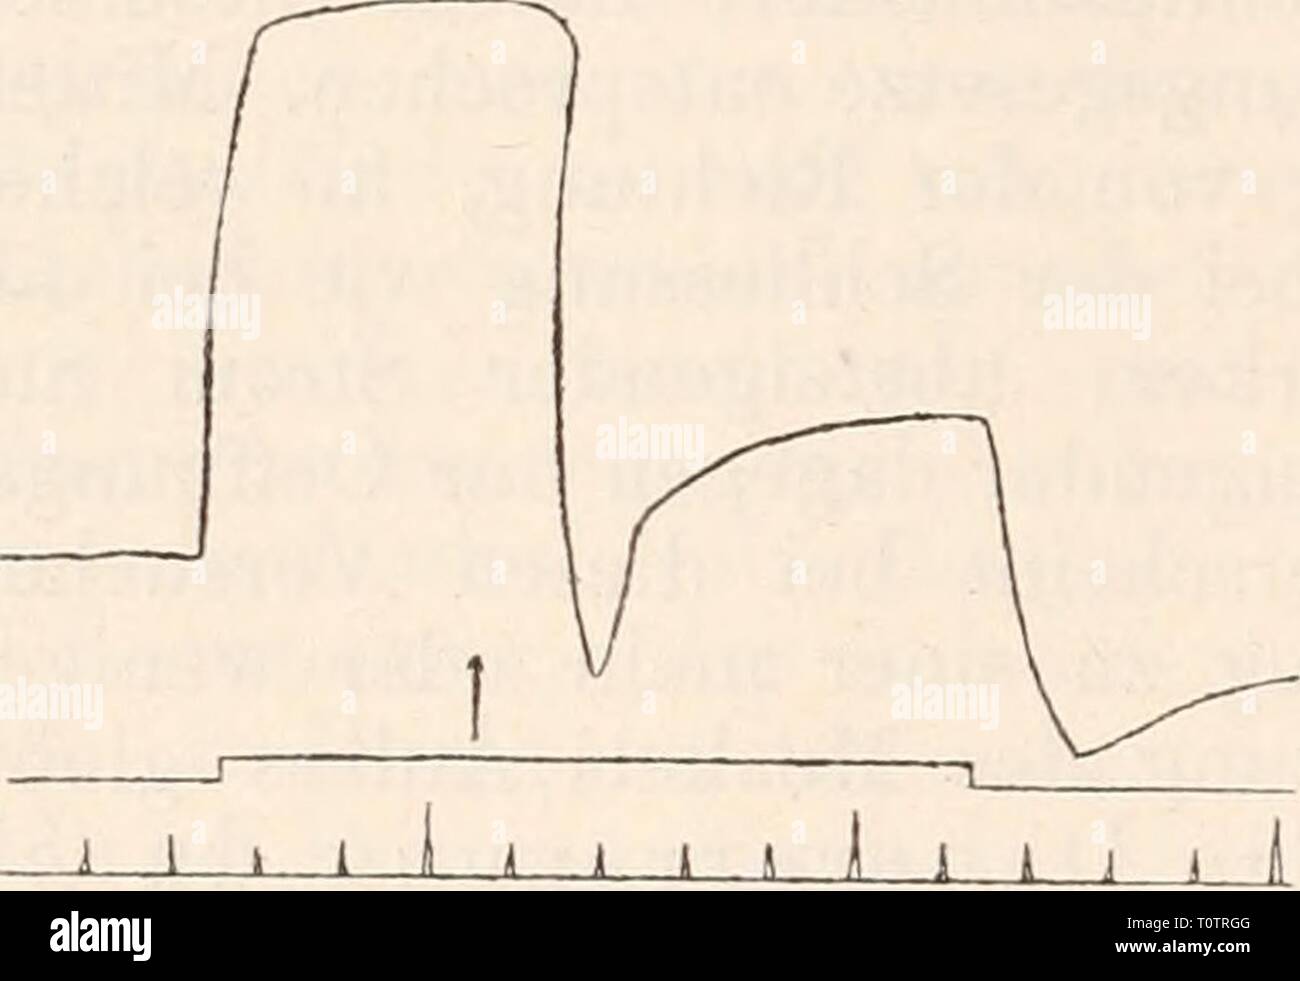 Elektrophysiologie (1895) Elektrophysiologie  elektrophysiolog00bied Year: 1895  Fig. 195. Schliessmuskel der Krebs- scheere. Reizung des Nerven mit Ketteu- strömen. Der vorhandene Tonus wird durch Schliessung schwächerer Ströme («, b) nur wenig oder gar nicht verstärkt, sondern wesentlich gehemmt. Umge- kehrt wirkt Schliessung eines starken Stromes (c). Während an tonusfreien, in der angegebenen Weise behandelten Präparaten die Folgeerscheinungen der Reizung mit Kettenströmen sich im Ganzen ziemlich gleichförmig gestalten, herrscht bei aller Gesetzmässigkeit im Einzelnen eine überraschende Ma Stock Photo